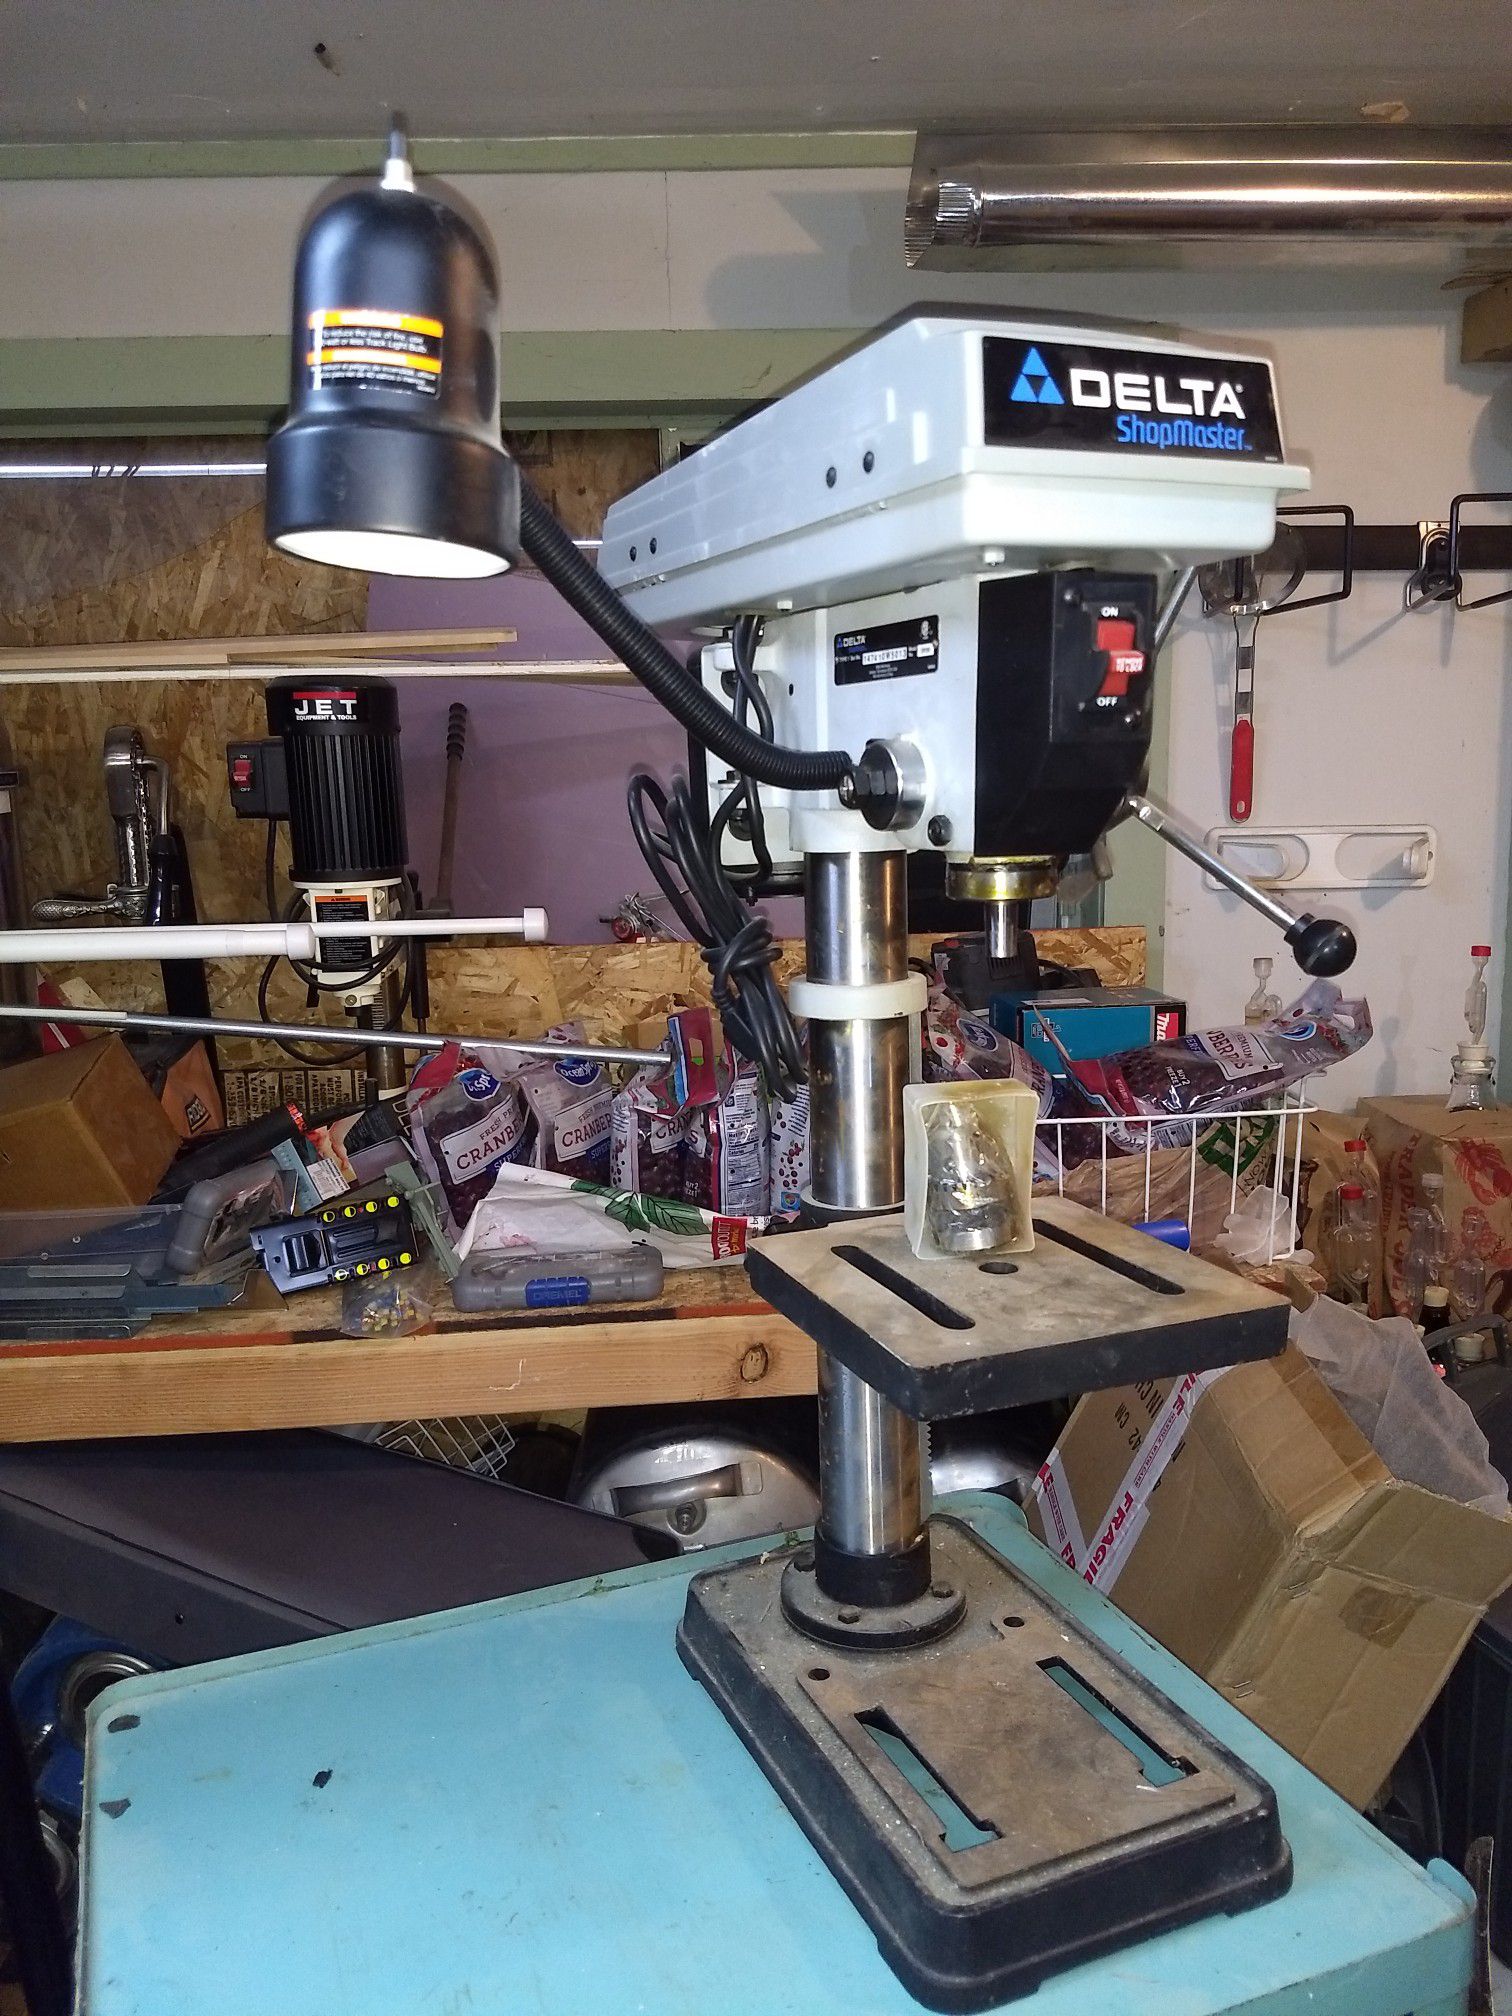 Delta DP200 Shop Master 10 inch shop drill press